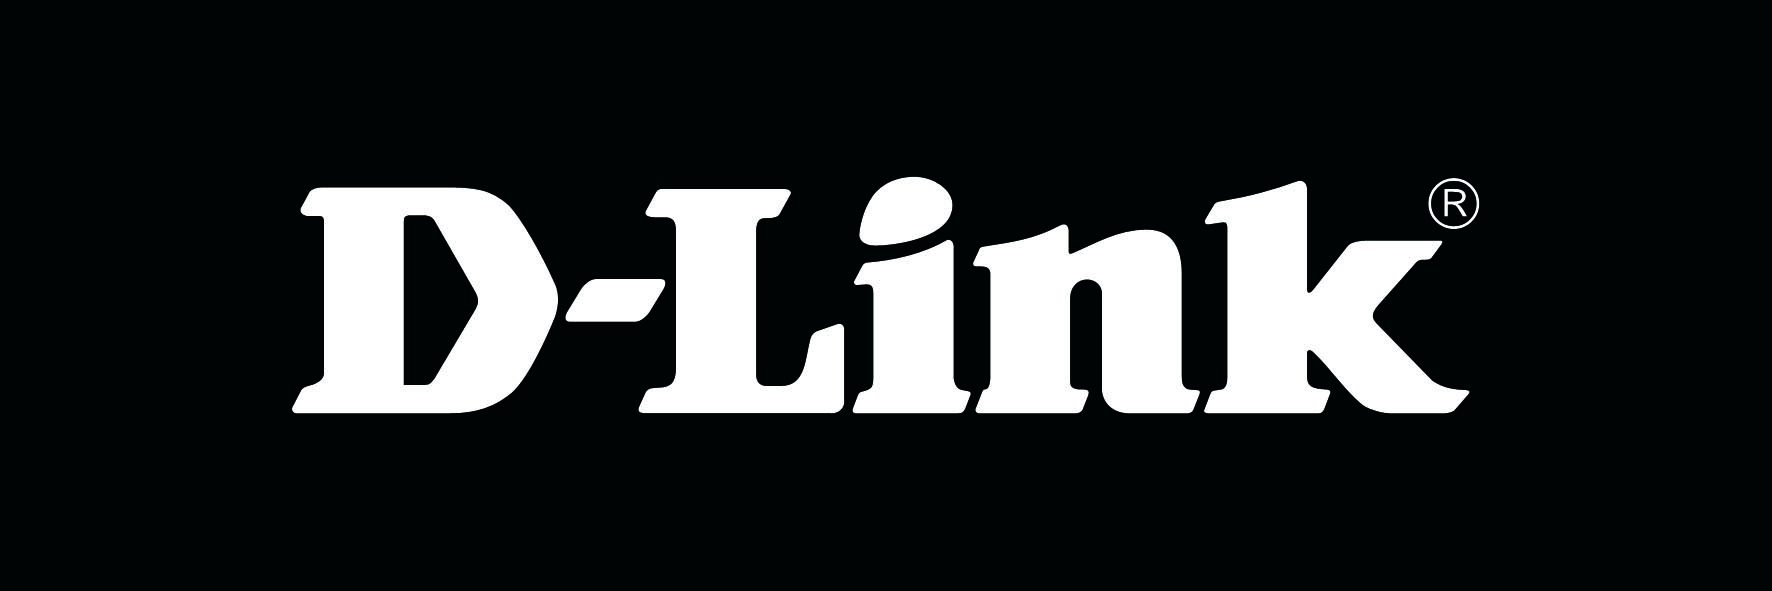 Link story. D link бренд. Фирма link. Эмблема d link. Товарный знак d-link.